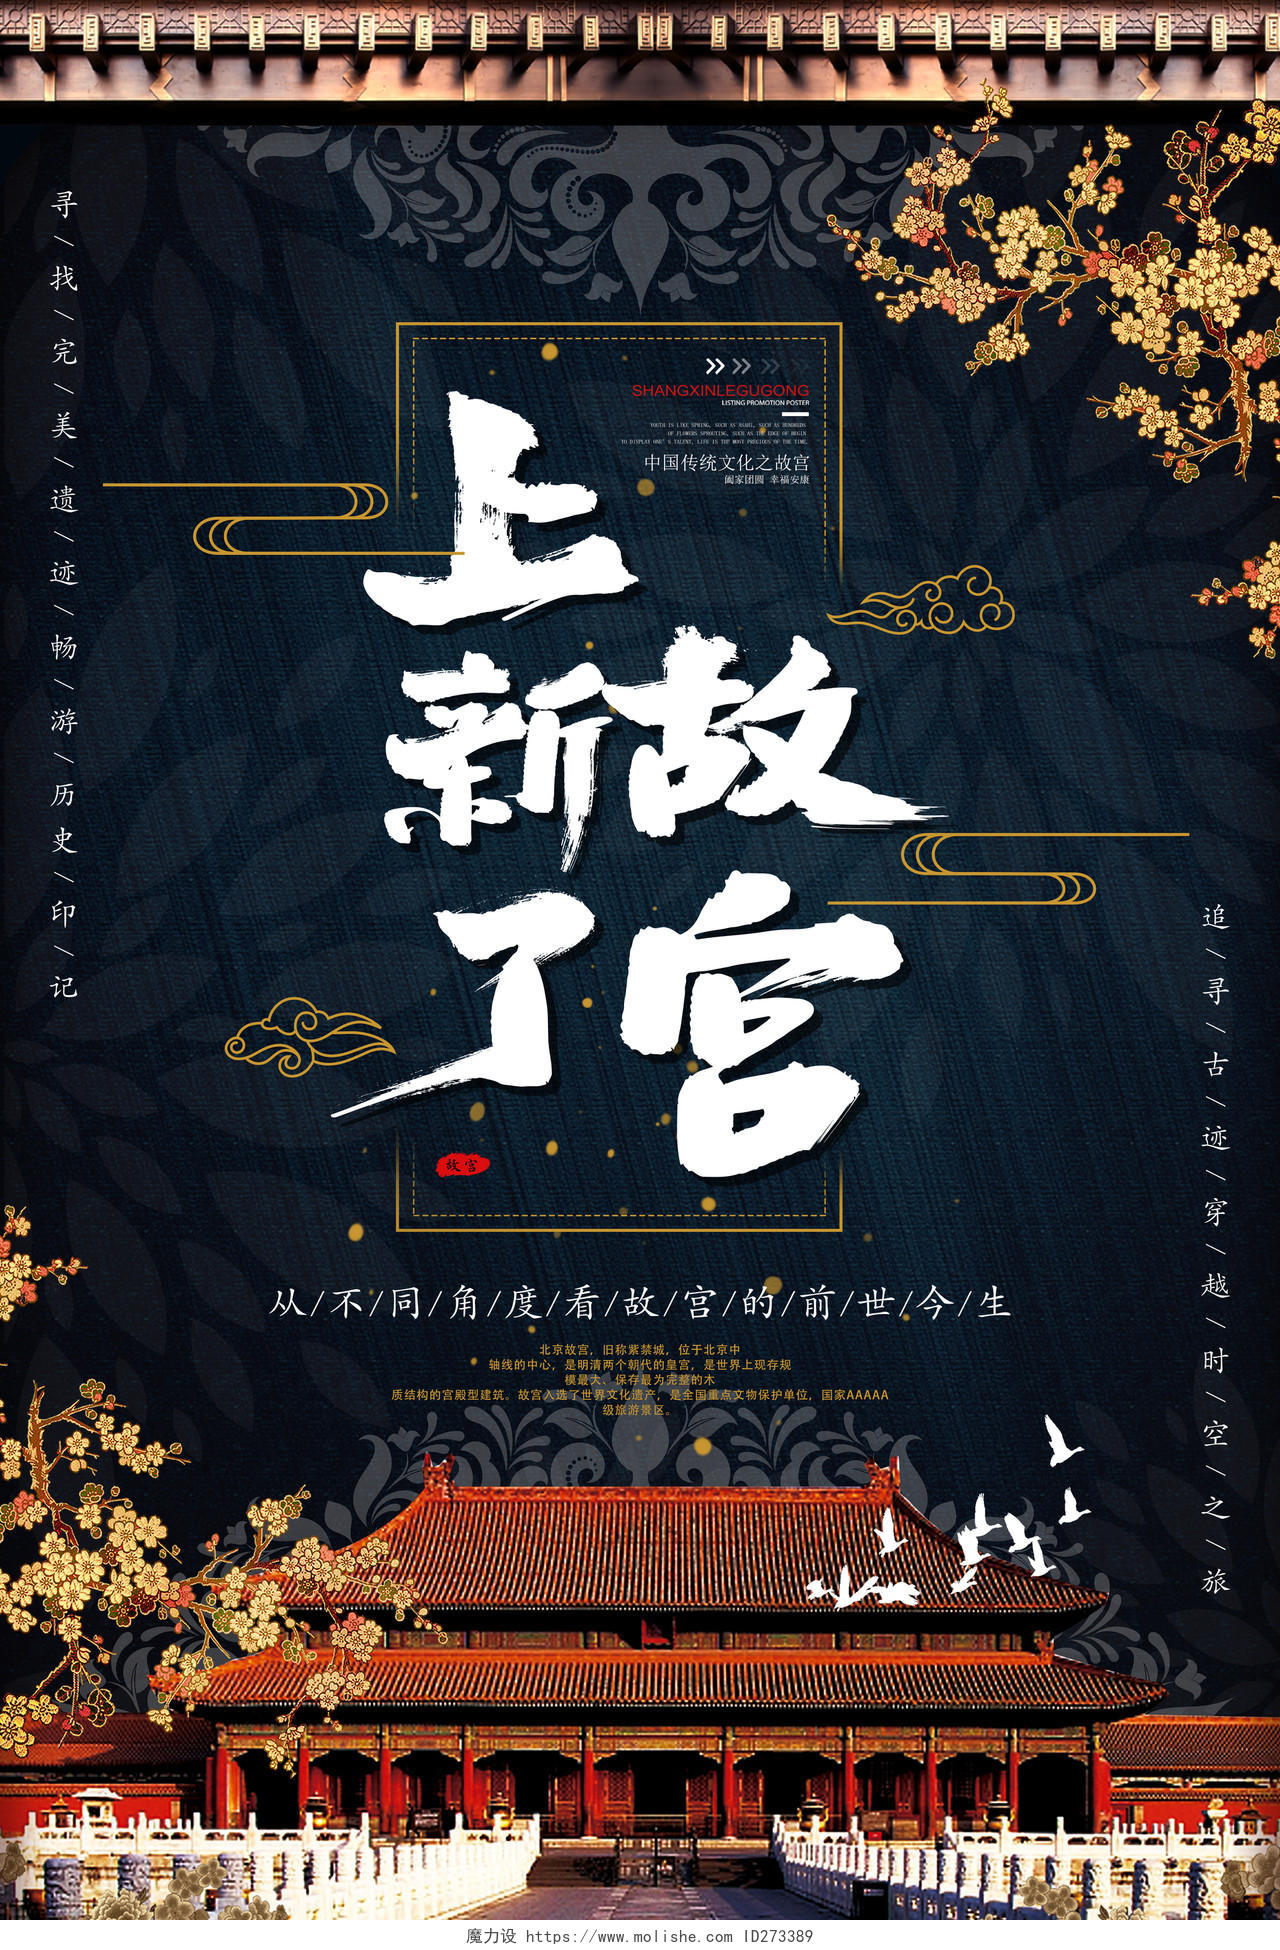 上新了故宫中国传统文化故宫博物馆旅游海报